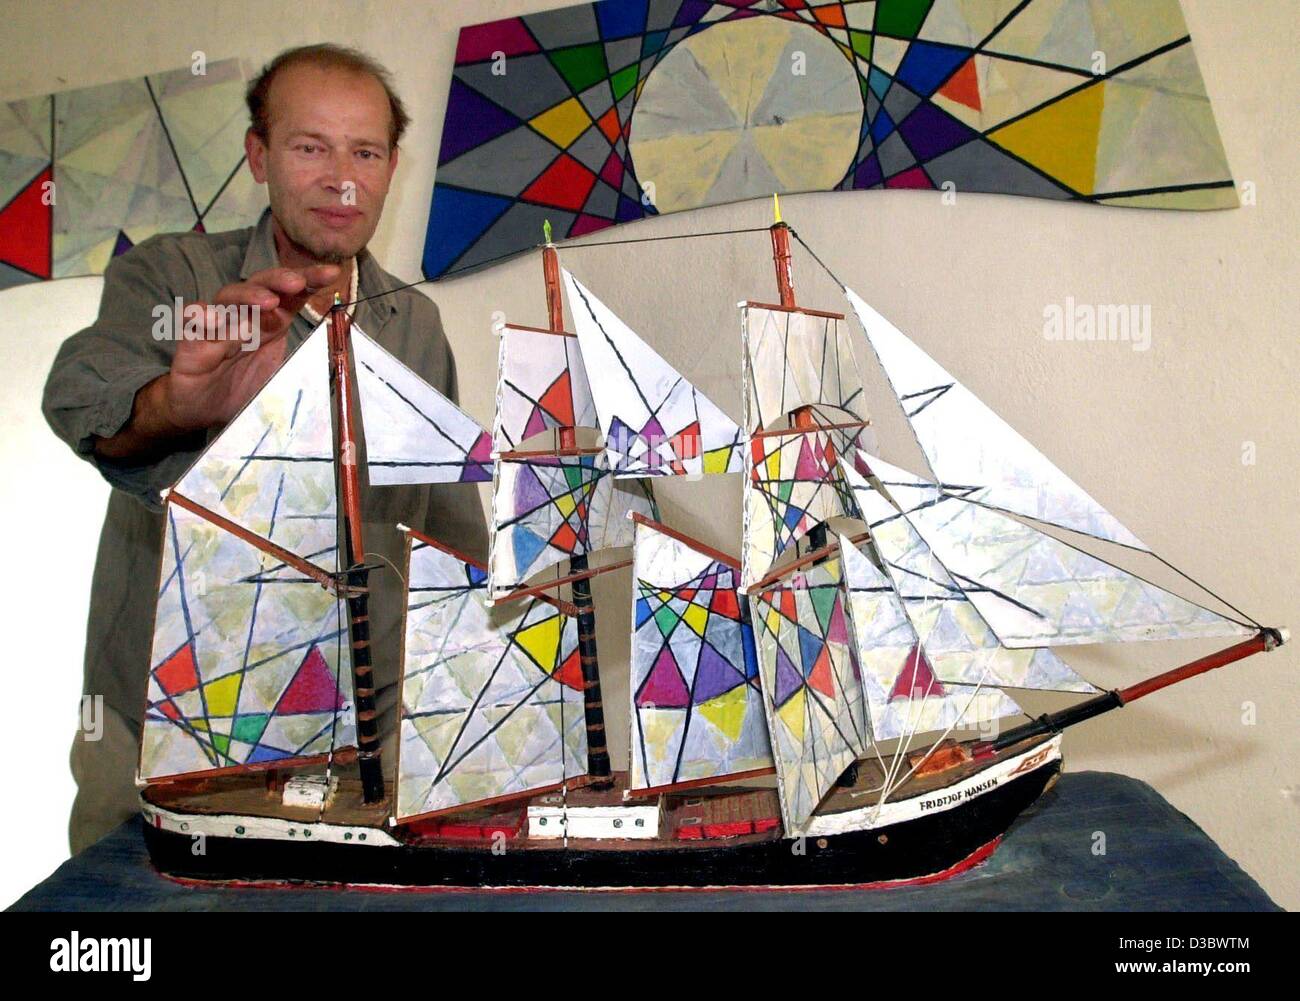 (Dpa) - der Maler Klaus Boellhoff zeigt das Modell des Segelschiffes "Fridtjof Nansen" in Prora auf der Insel Rügen, Deutschland, 16. Juli 2003. Böllhoff will die Segel des Originals Dreimaster in einem farbenfrohen Design zu malen, die wechselnden Kompositionen produziert. Das Gemälde von 980 qm Stockfoto